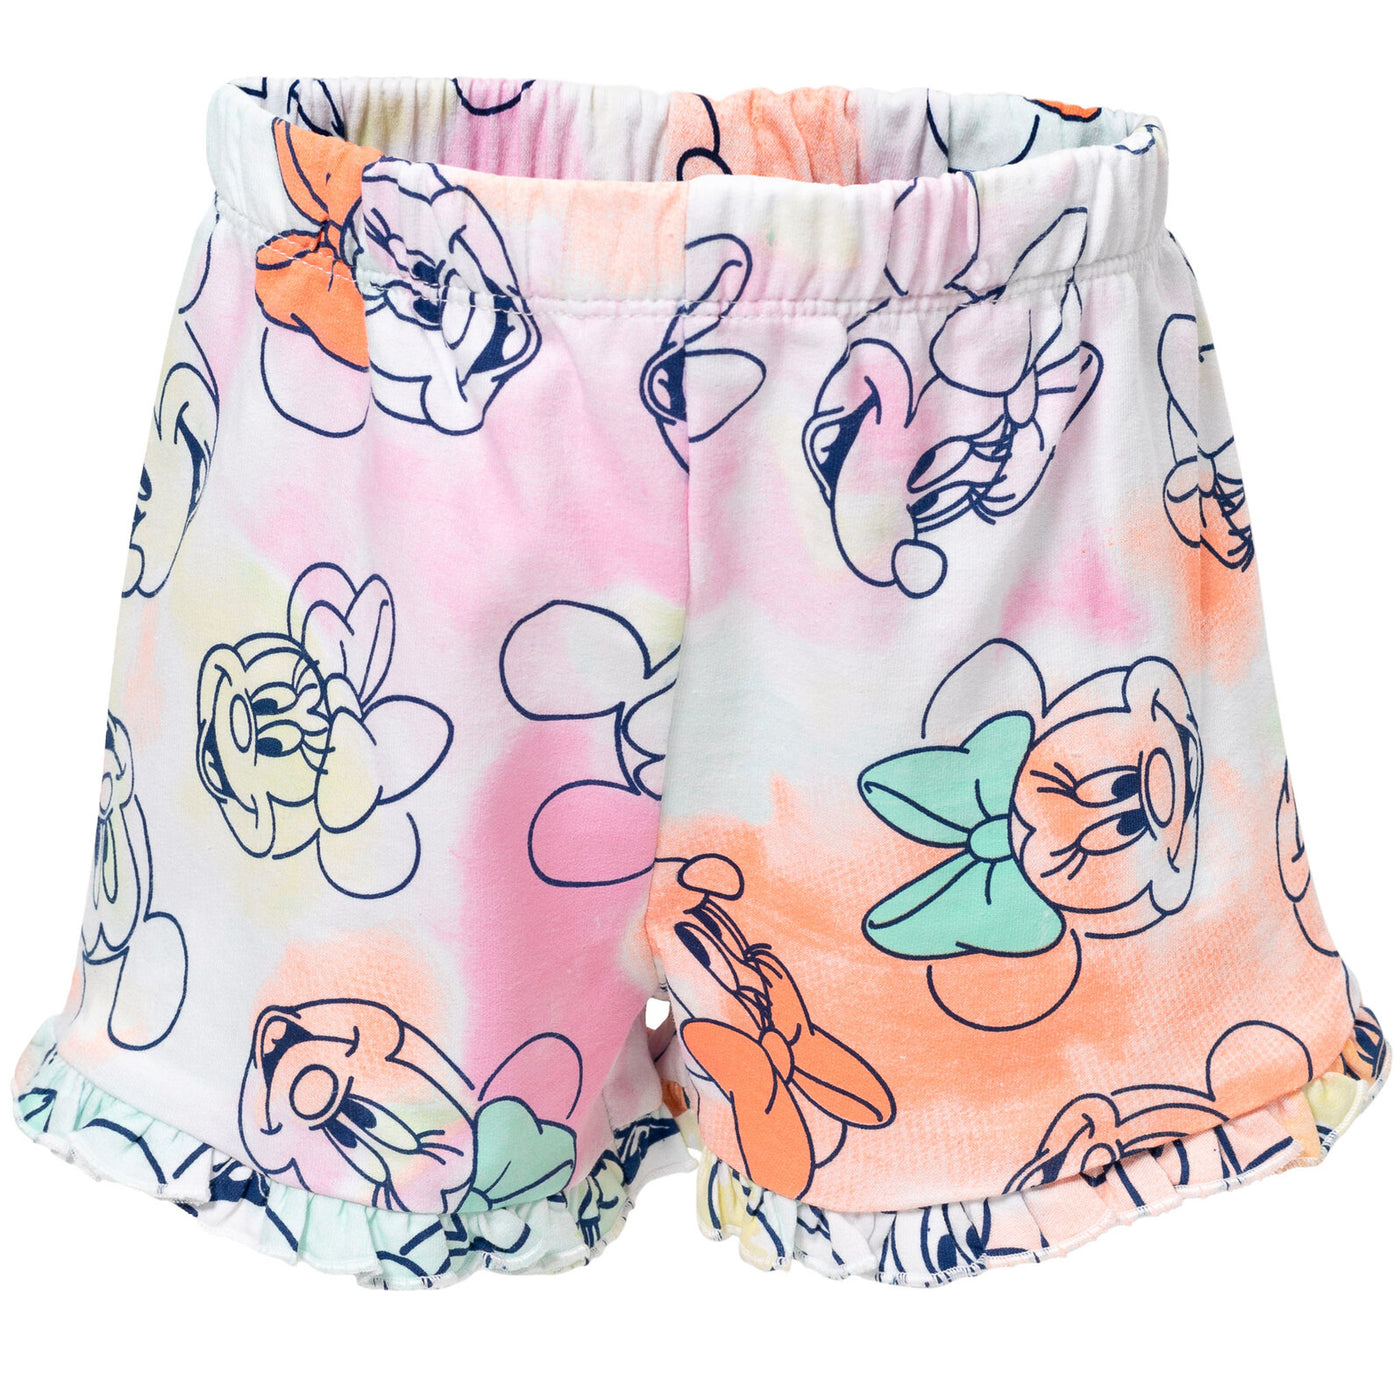 Conjunto de camiseta de Minnie Mouse y pantalones cortos de felpa francesa